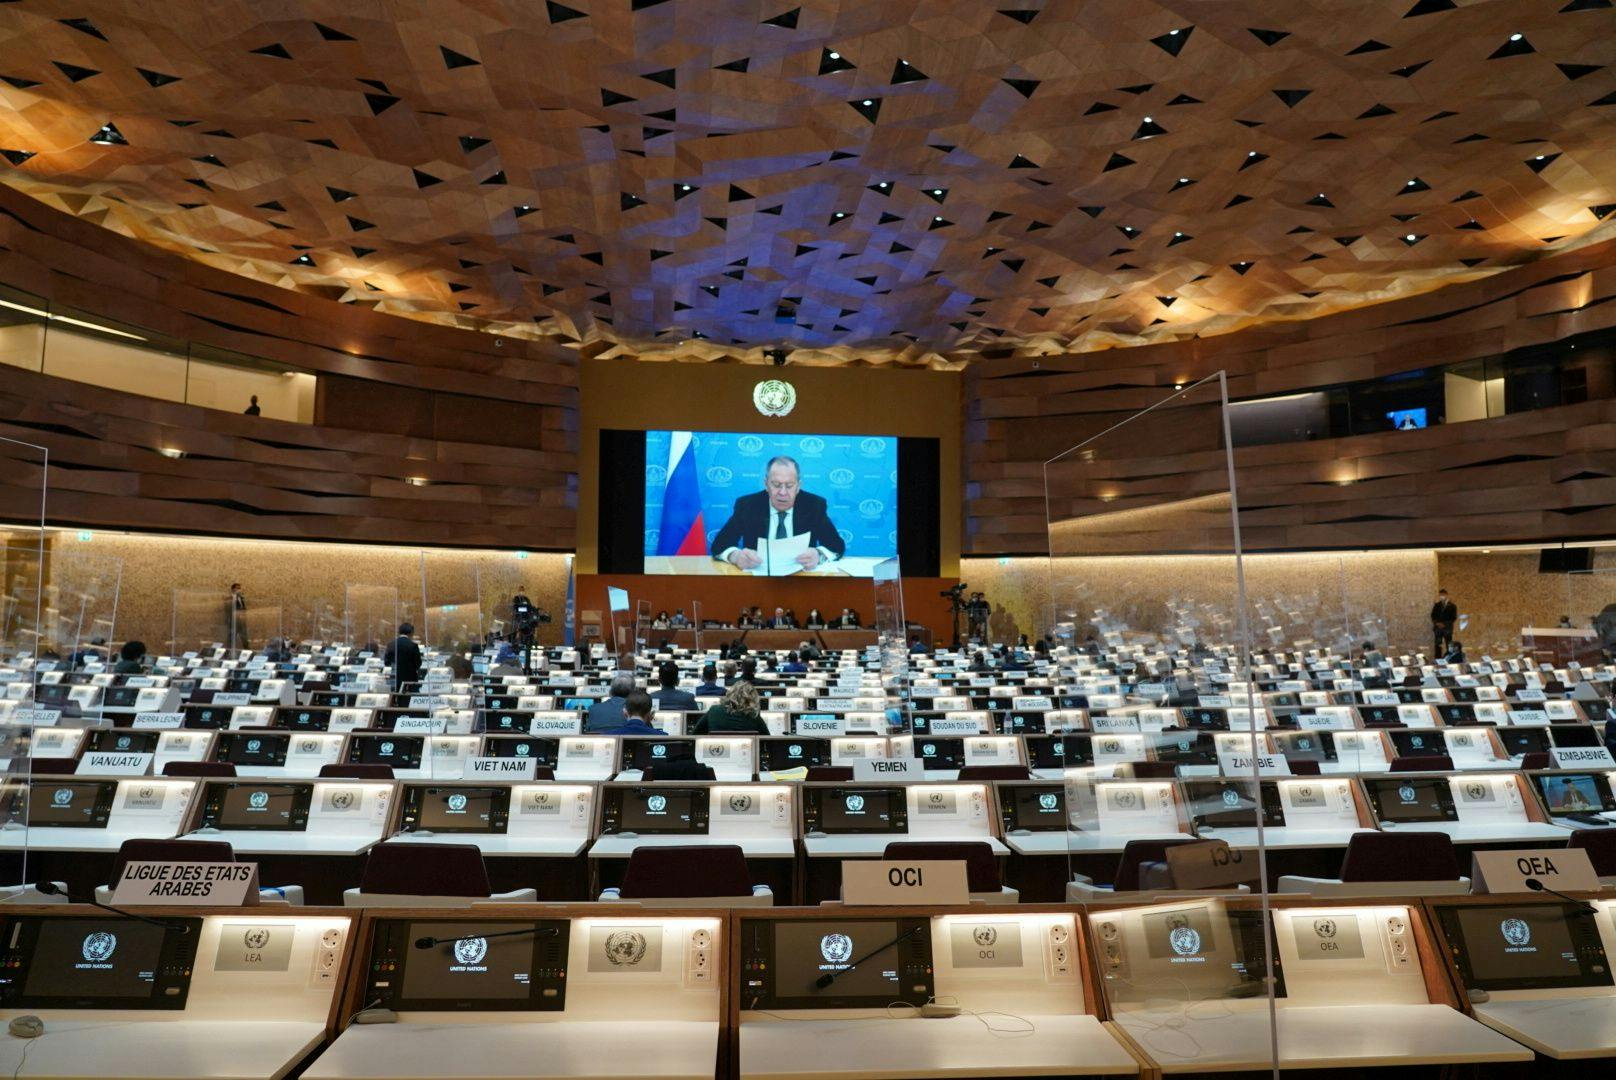 Bizarrer Anblick im UN-Menschenrechtsrat: Während einer Rede des russischen Außenministers verließen fast alle Delegierte aus Protest den Raum.